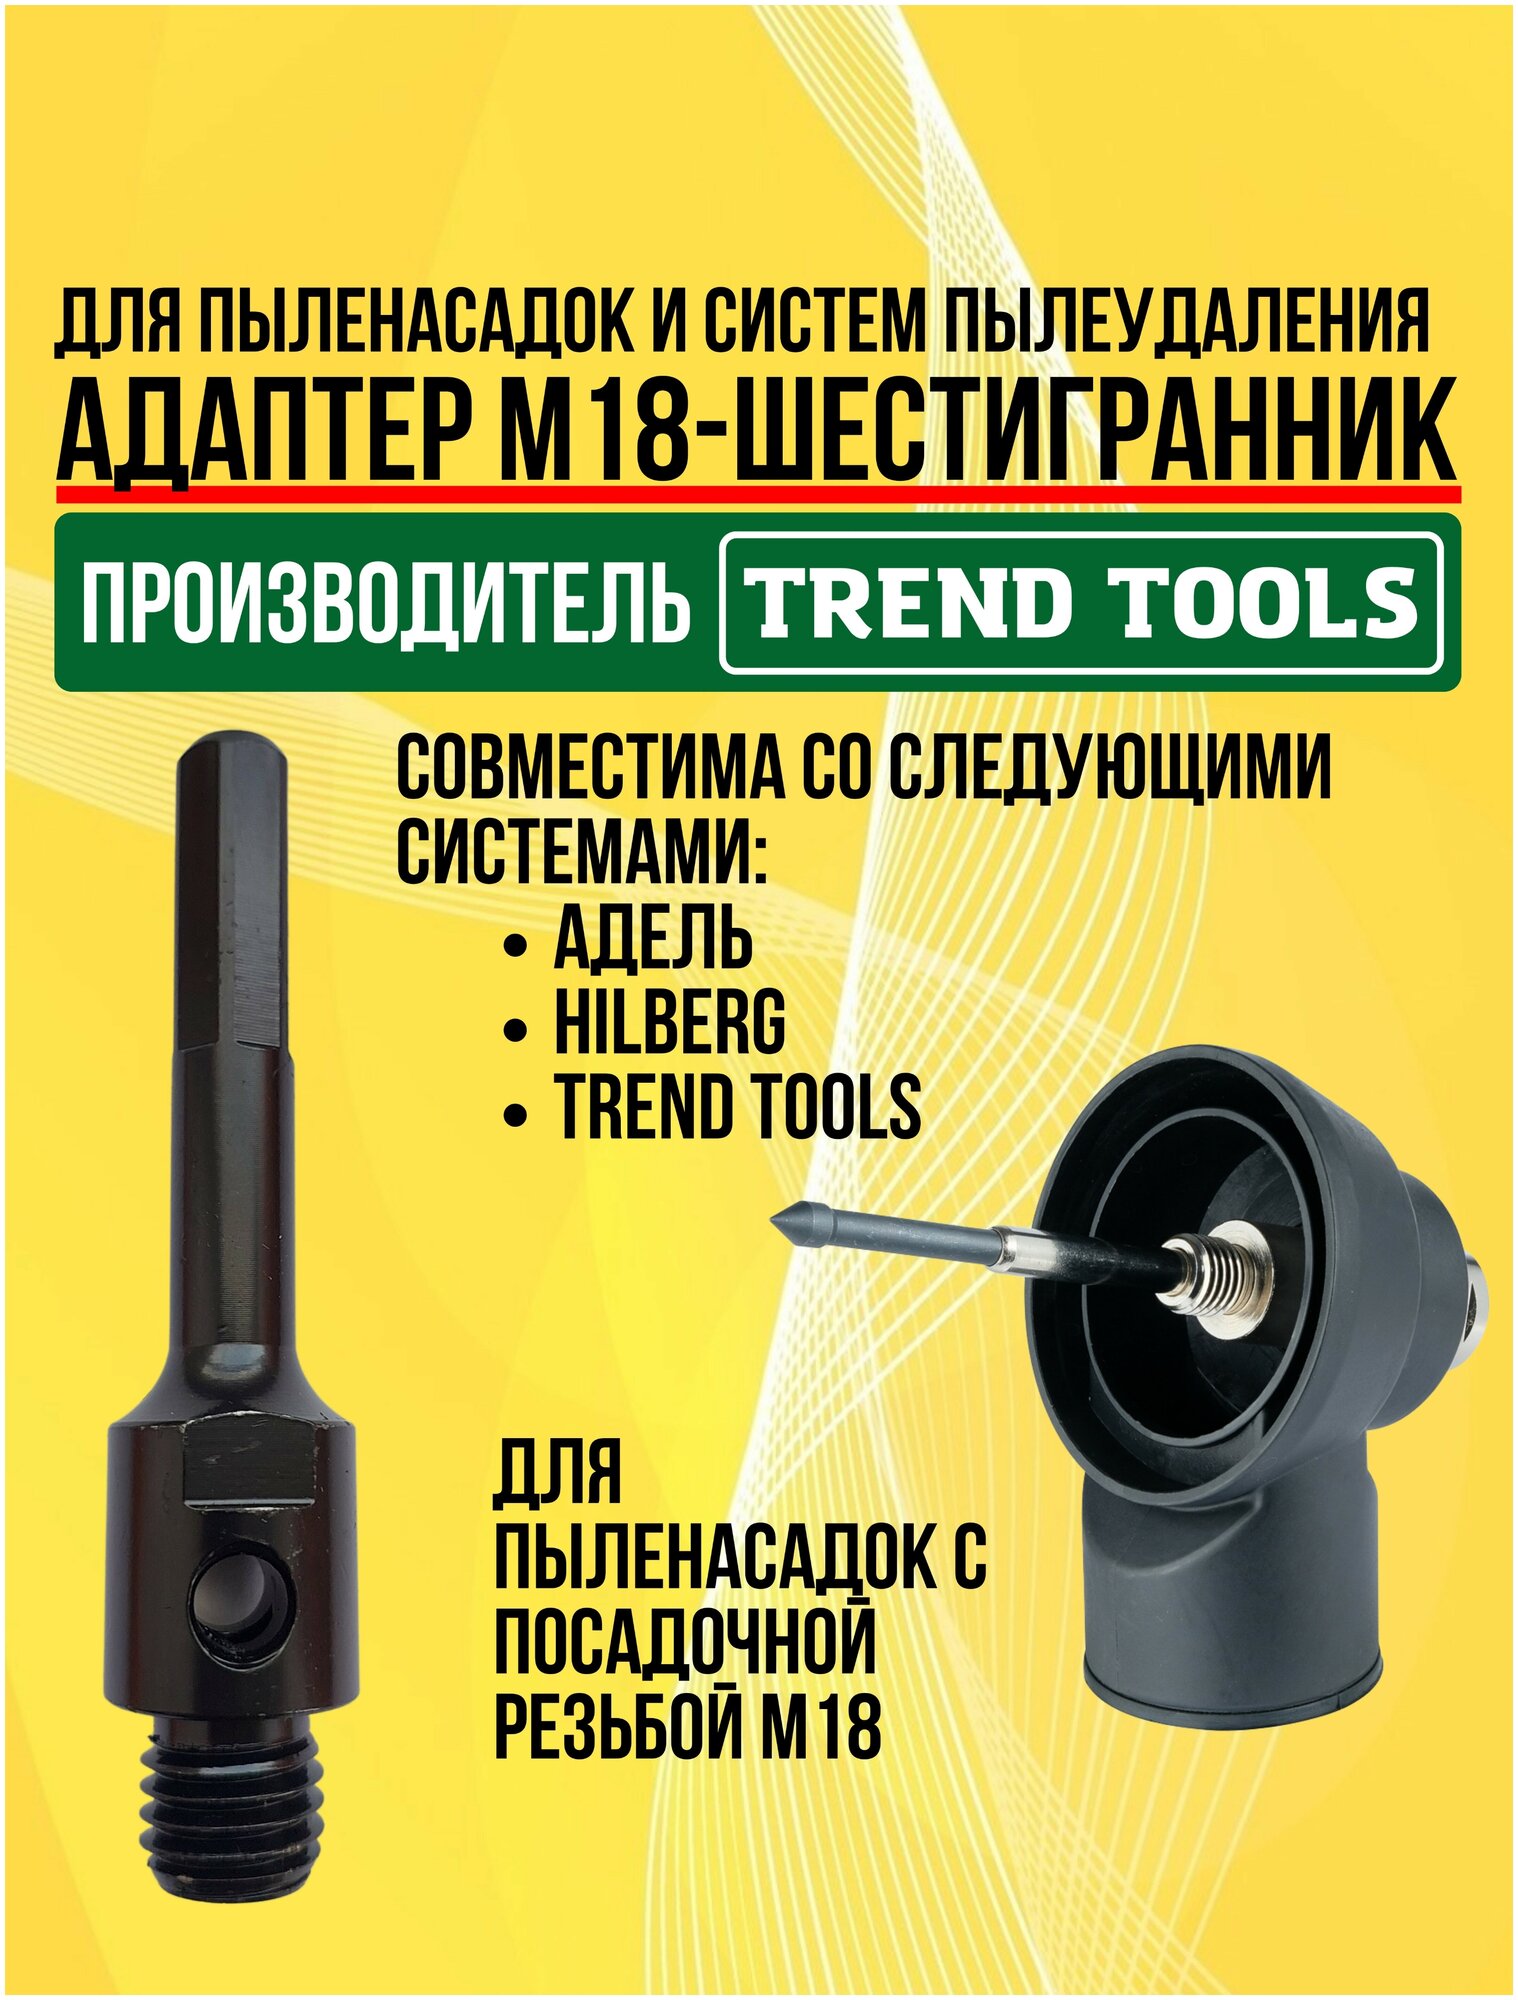 Адаптер М18-шестигранник для системы пылеудаления для дрели, Trend Tools